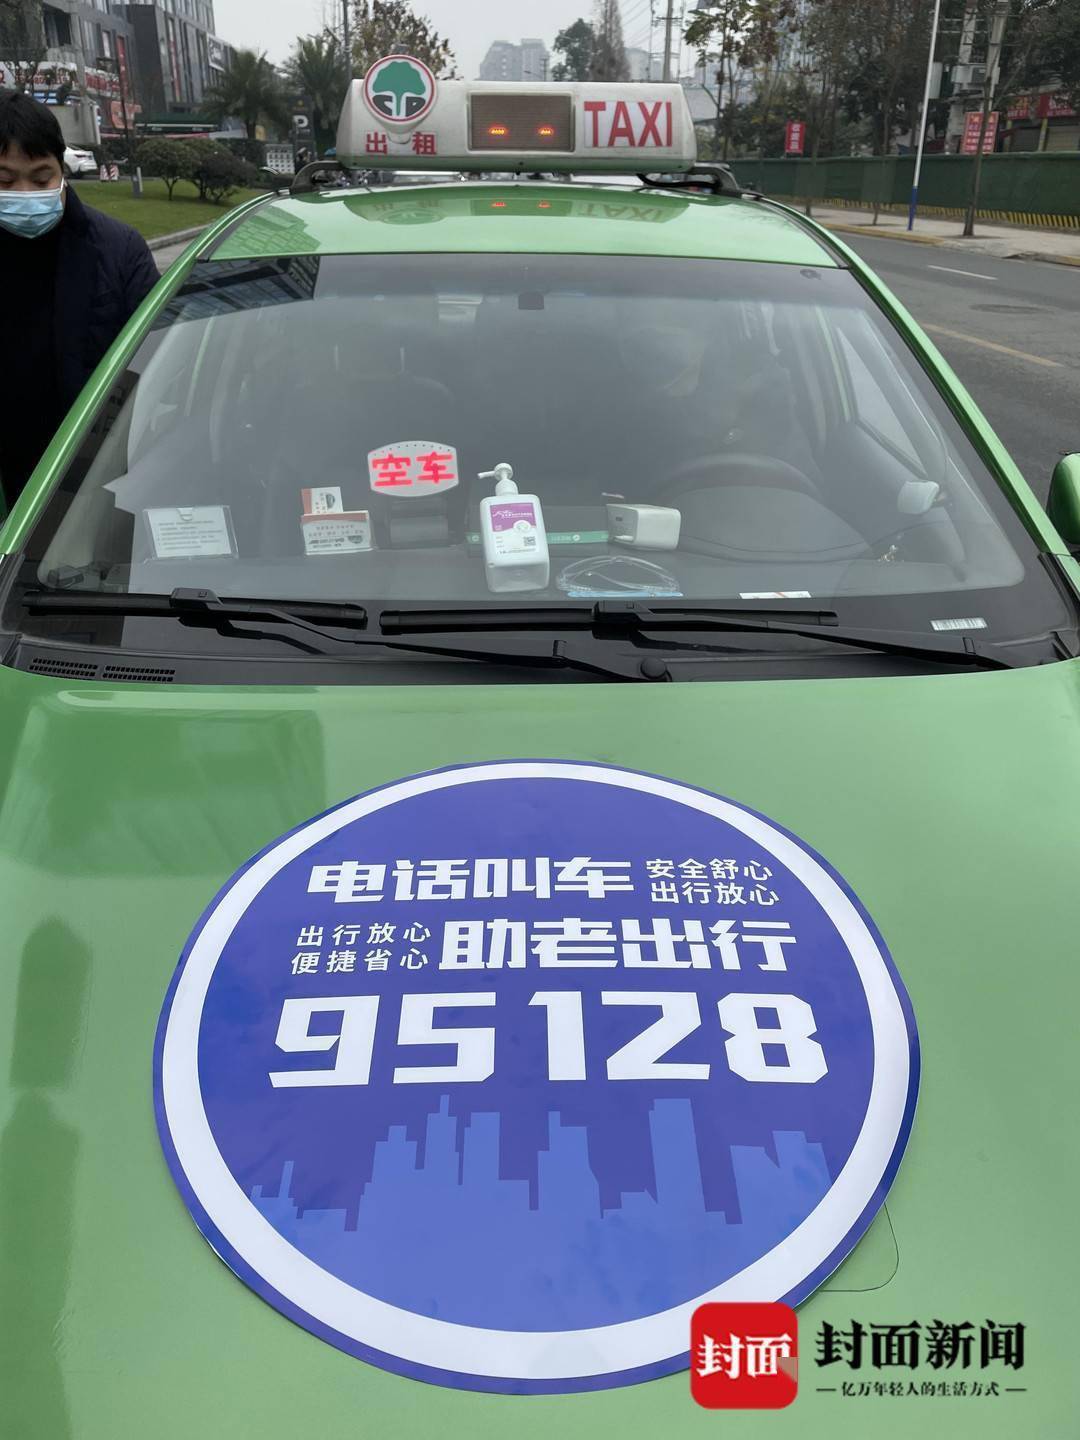 成都市95128出租车约车服务电话正式开通助力老年人出行